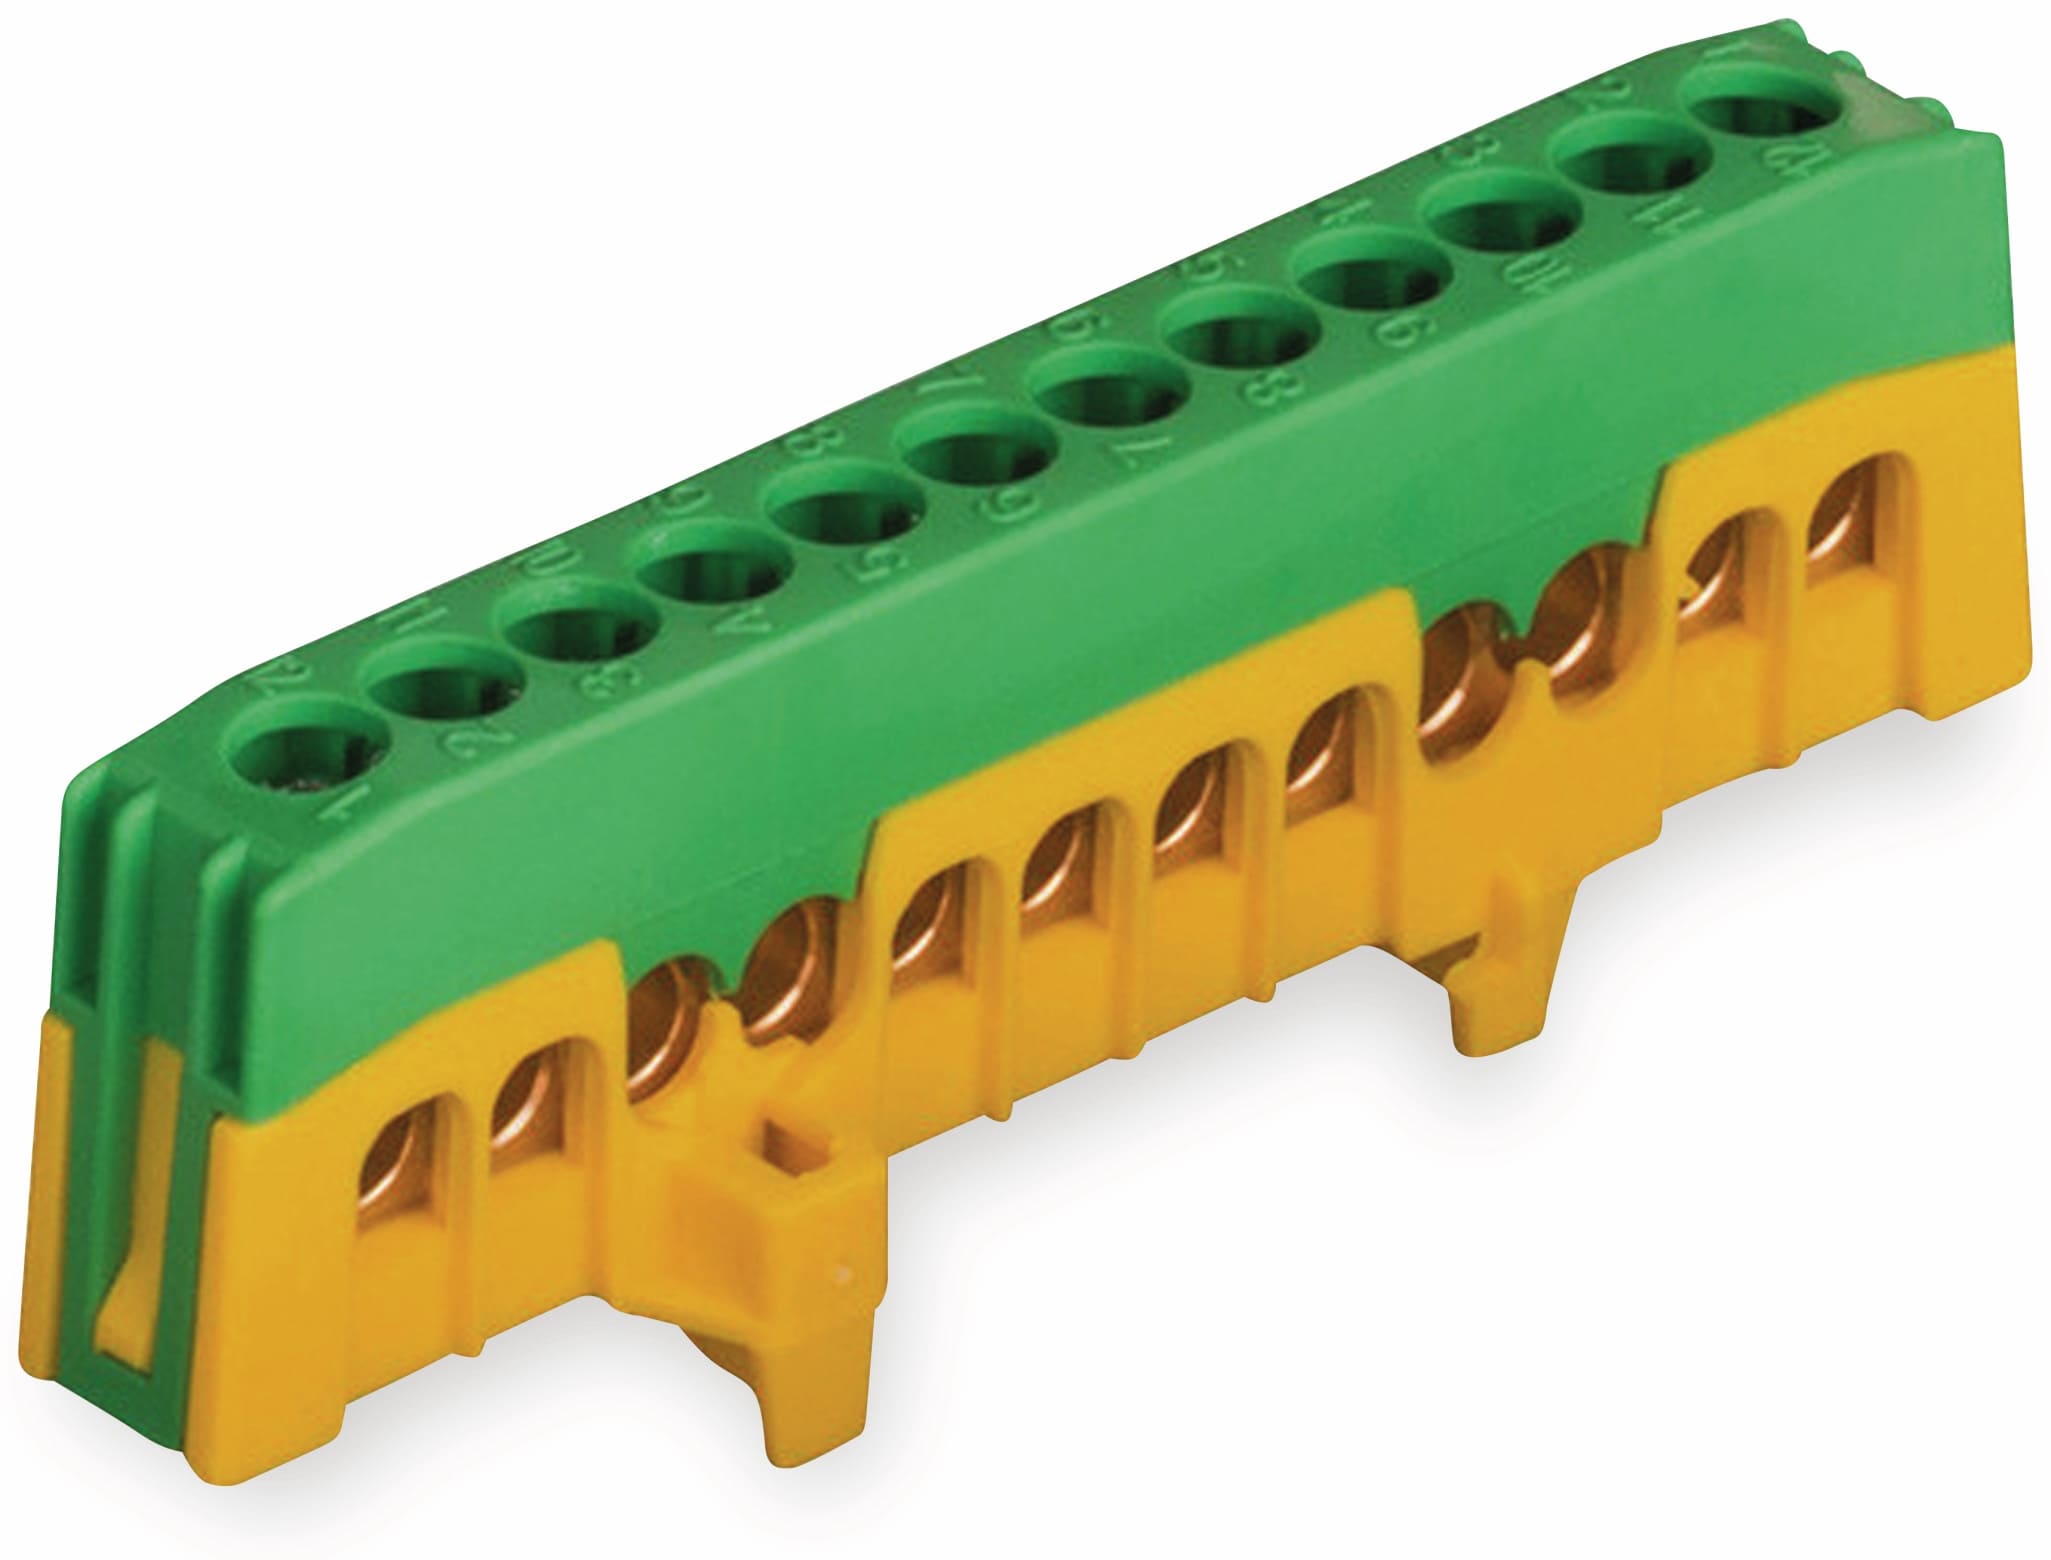 POLLMANN Schutzleiterklemme 12-polig, 16 mm², grün/gelb, für Hutschiene